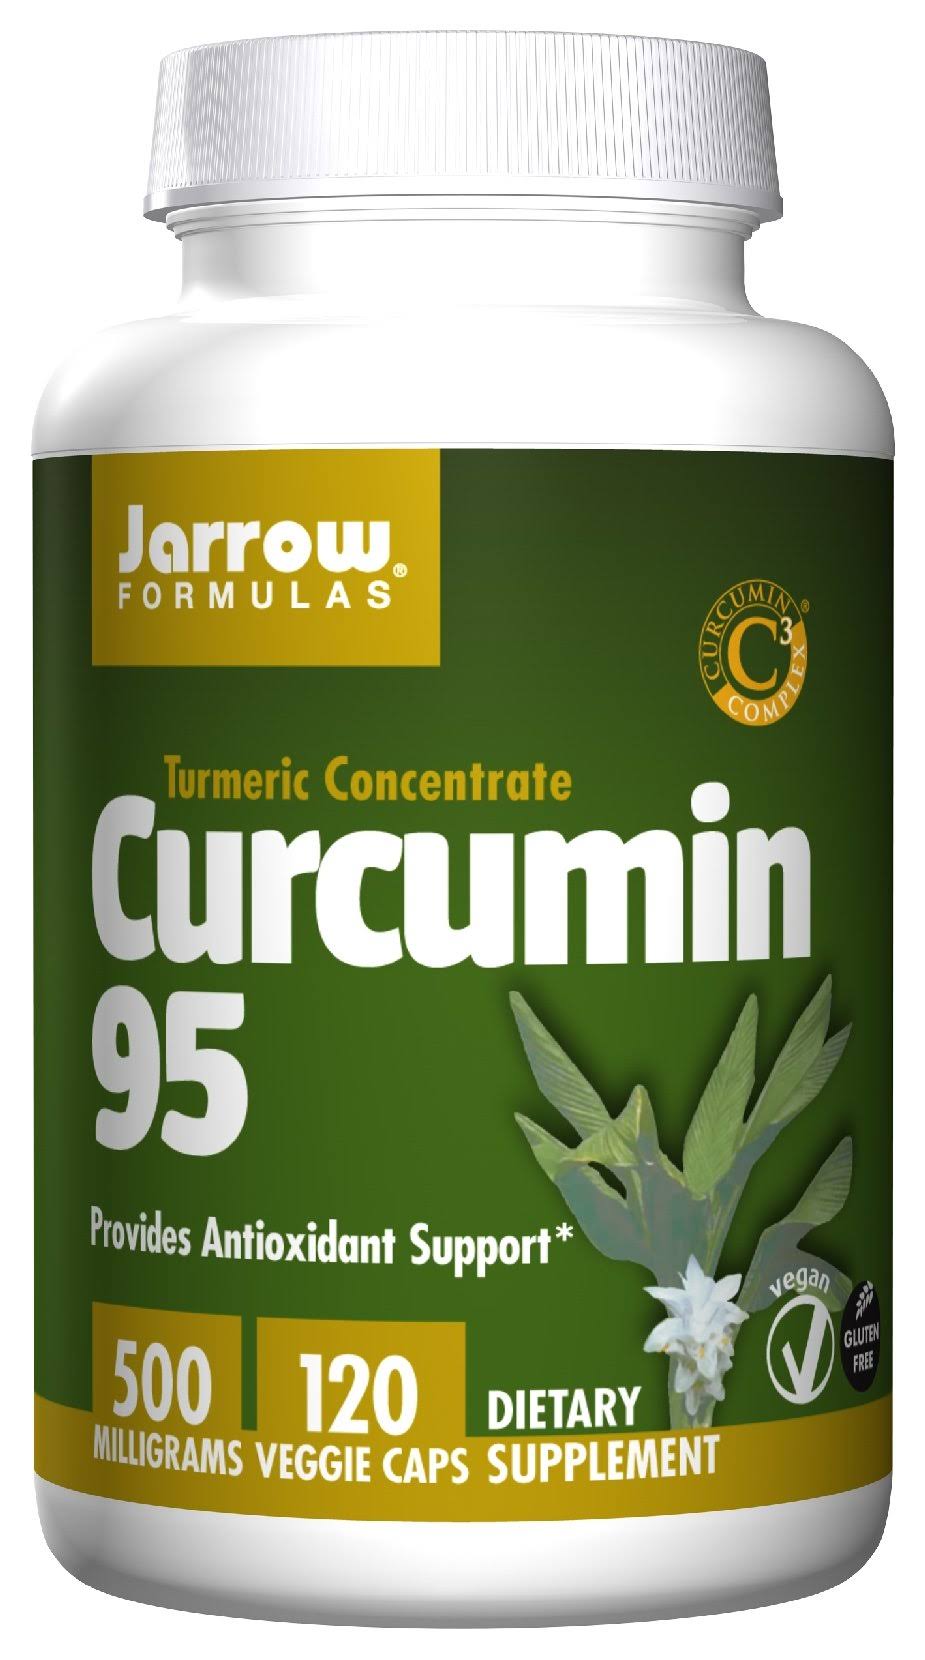 Jarrow Formulas Curcumin 95 - 120 Capsules, 500mg